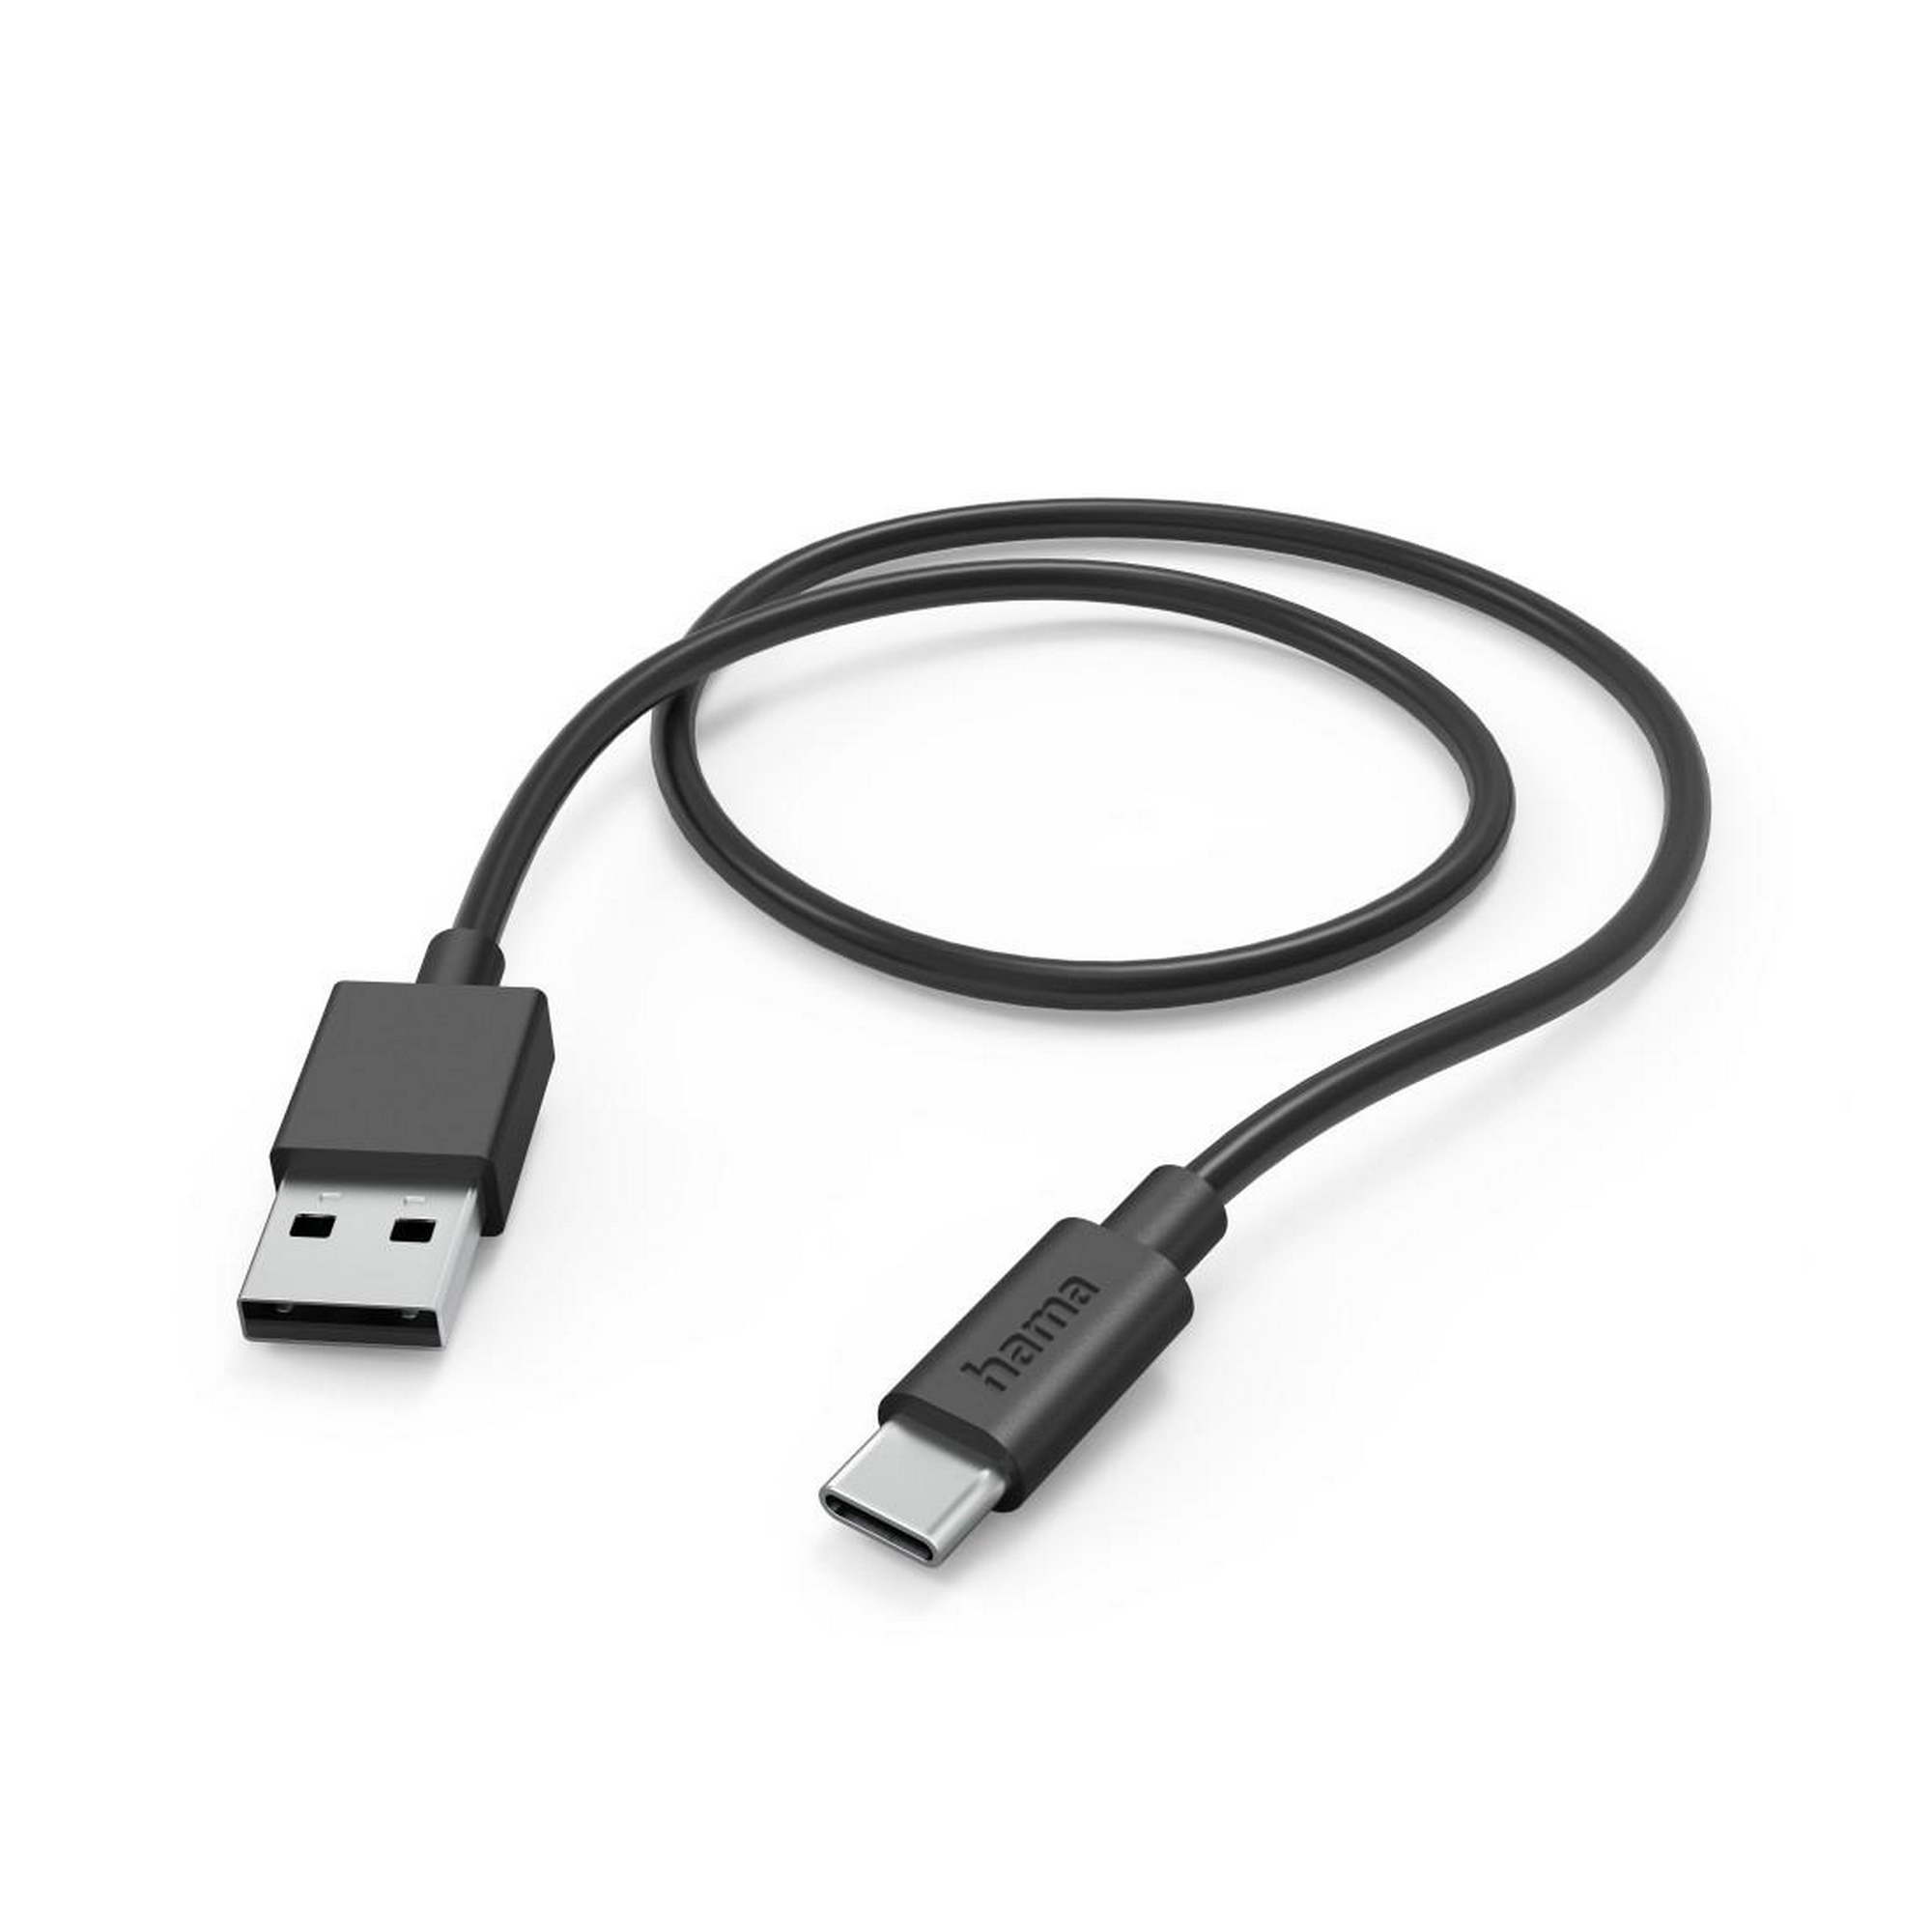 Ladekabel schwarz USB-A mit USB-C 1 m + product picture